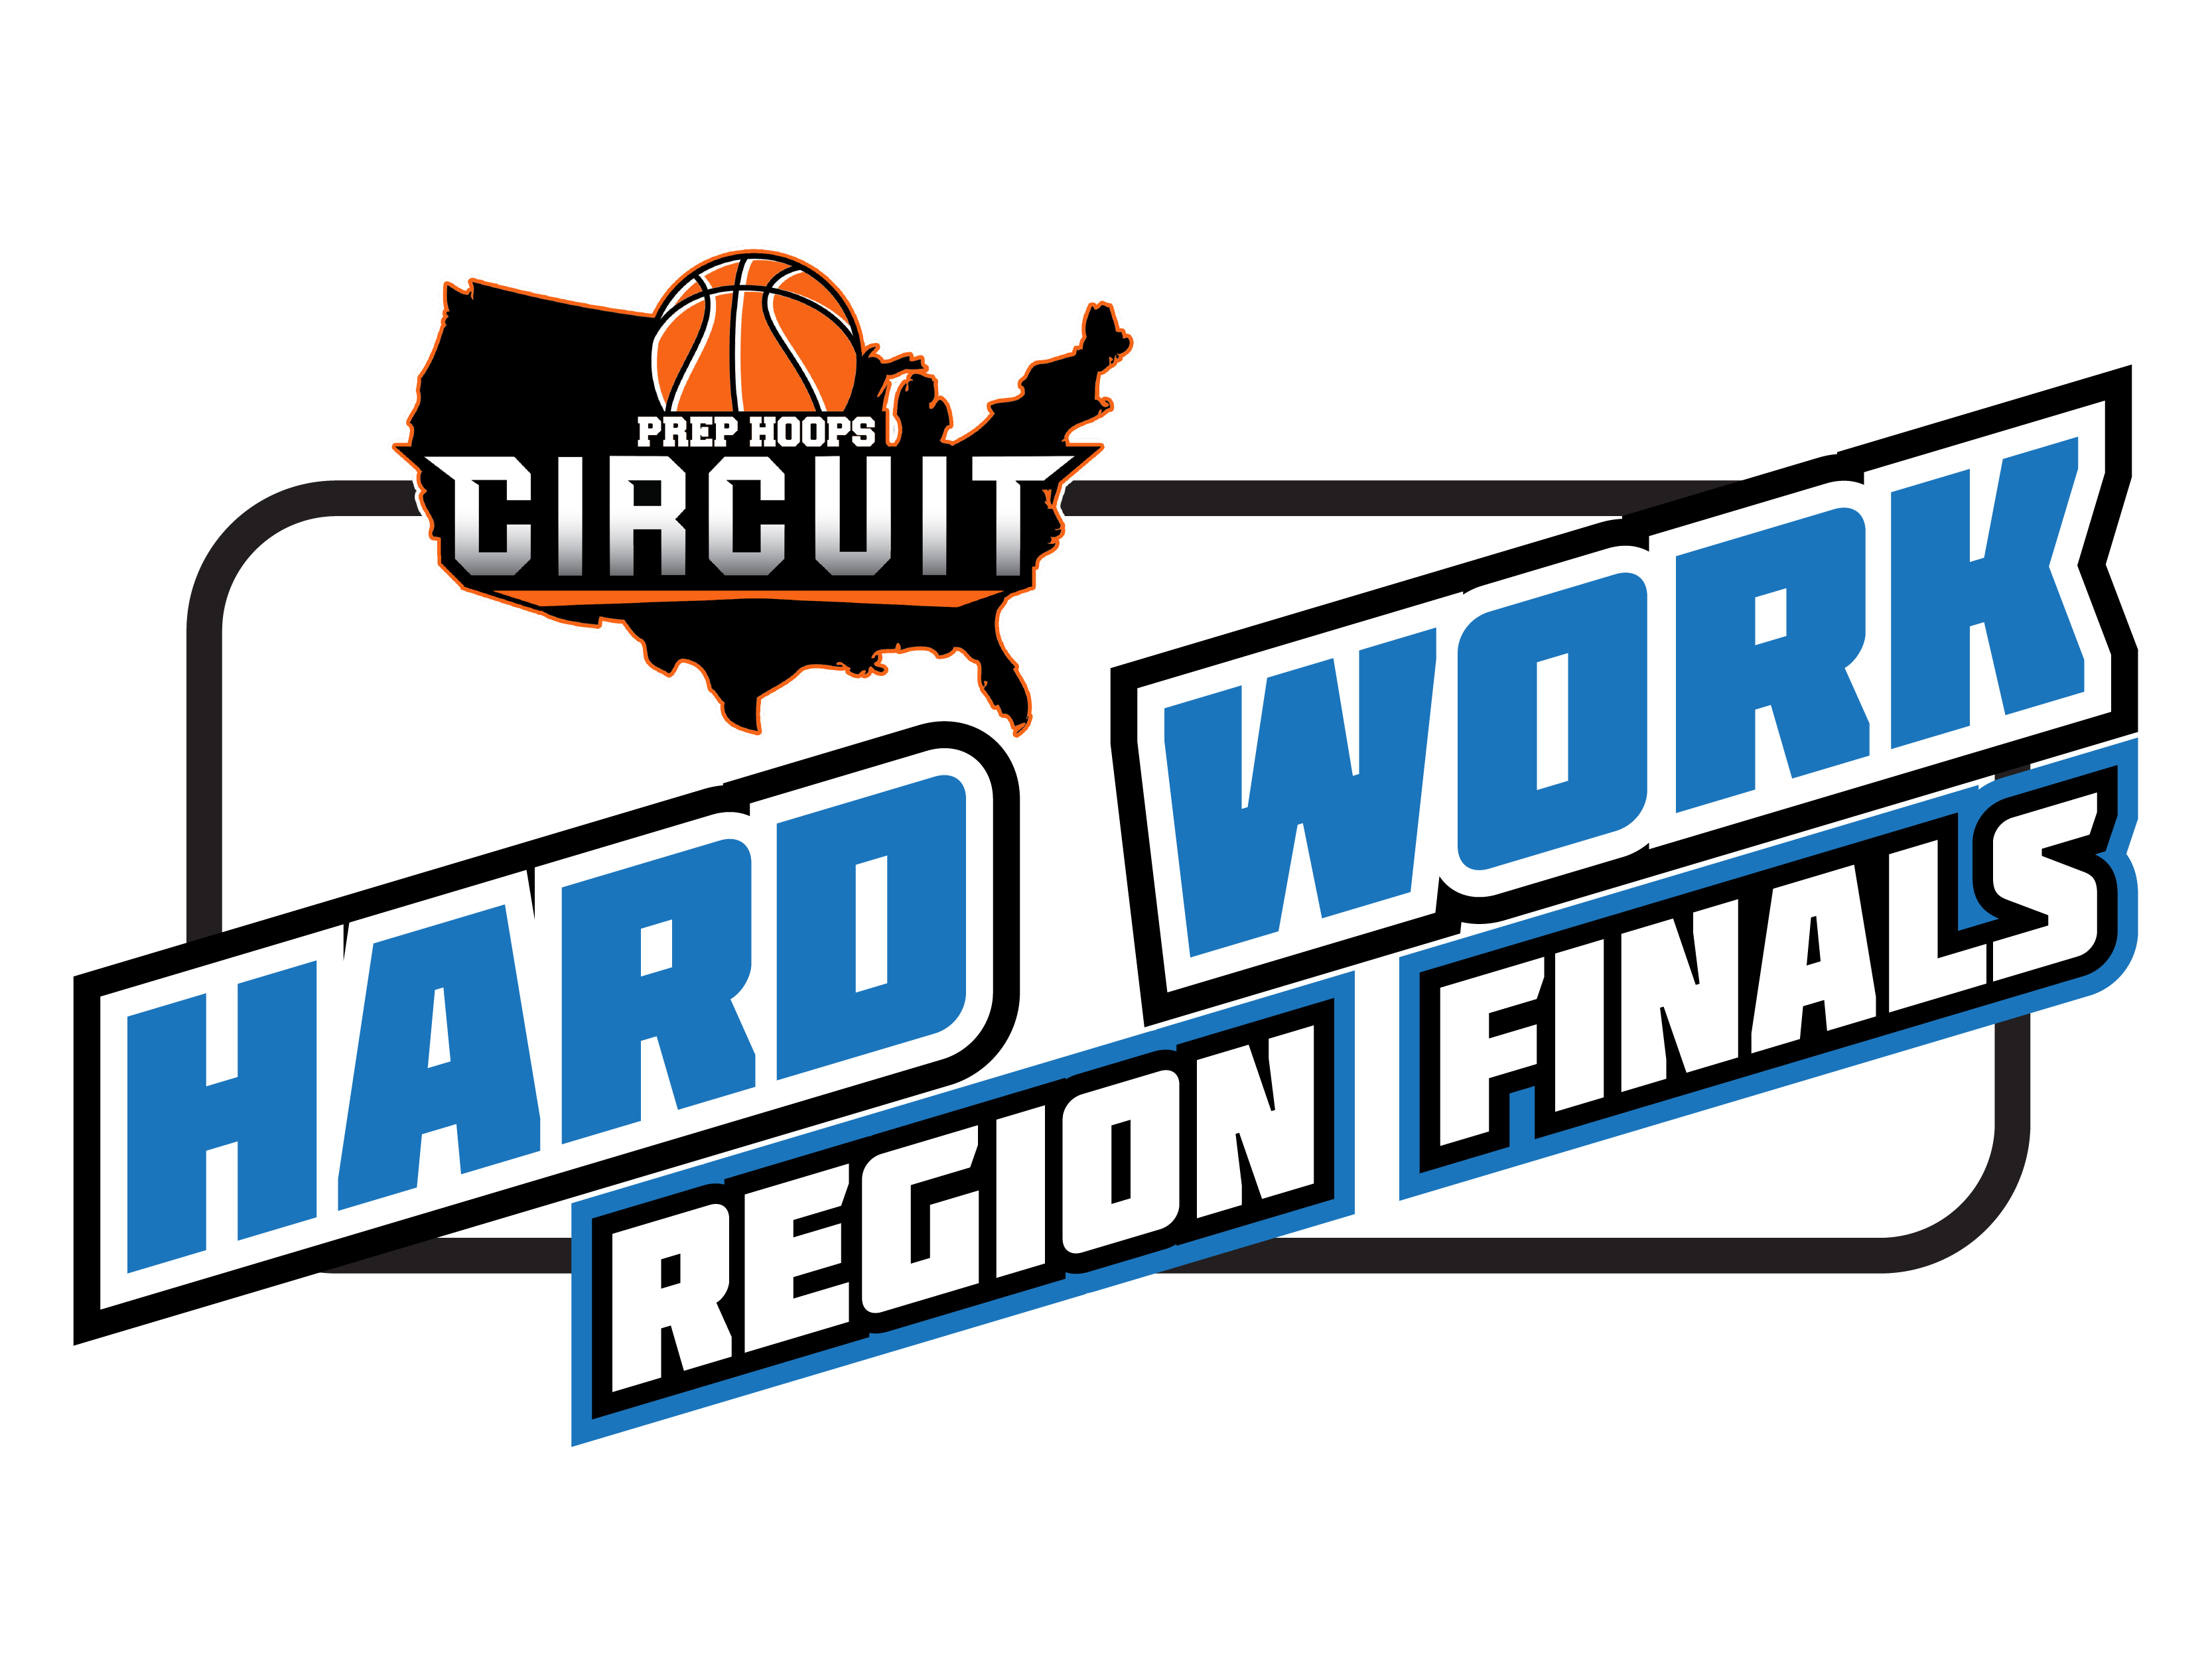 Hard Work Region Finals